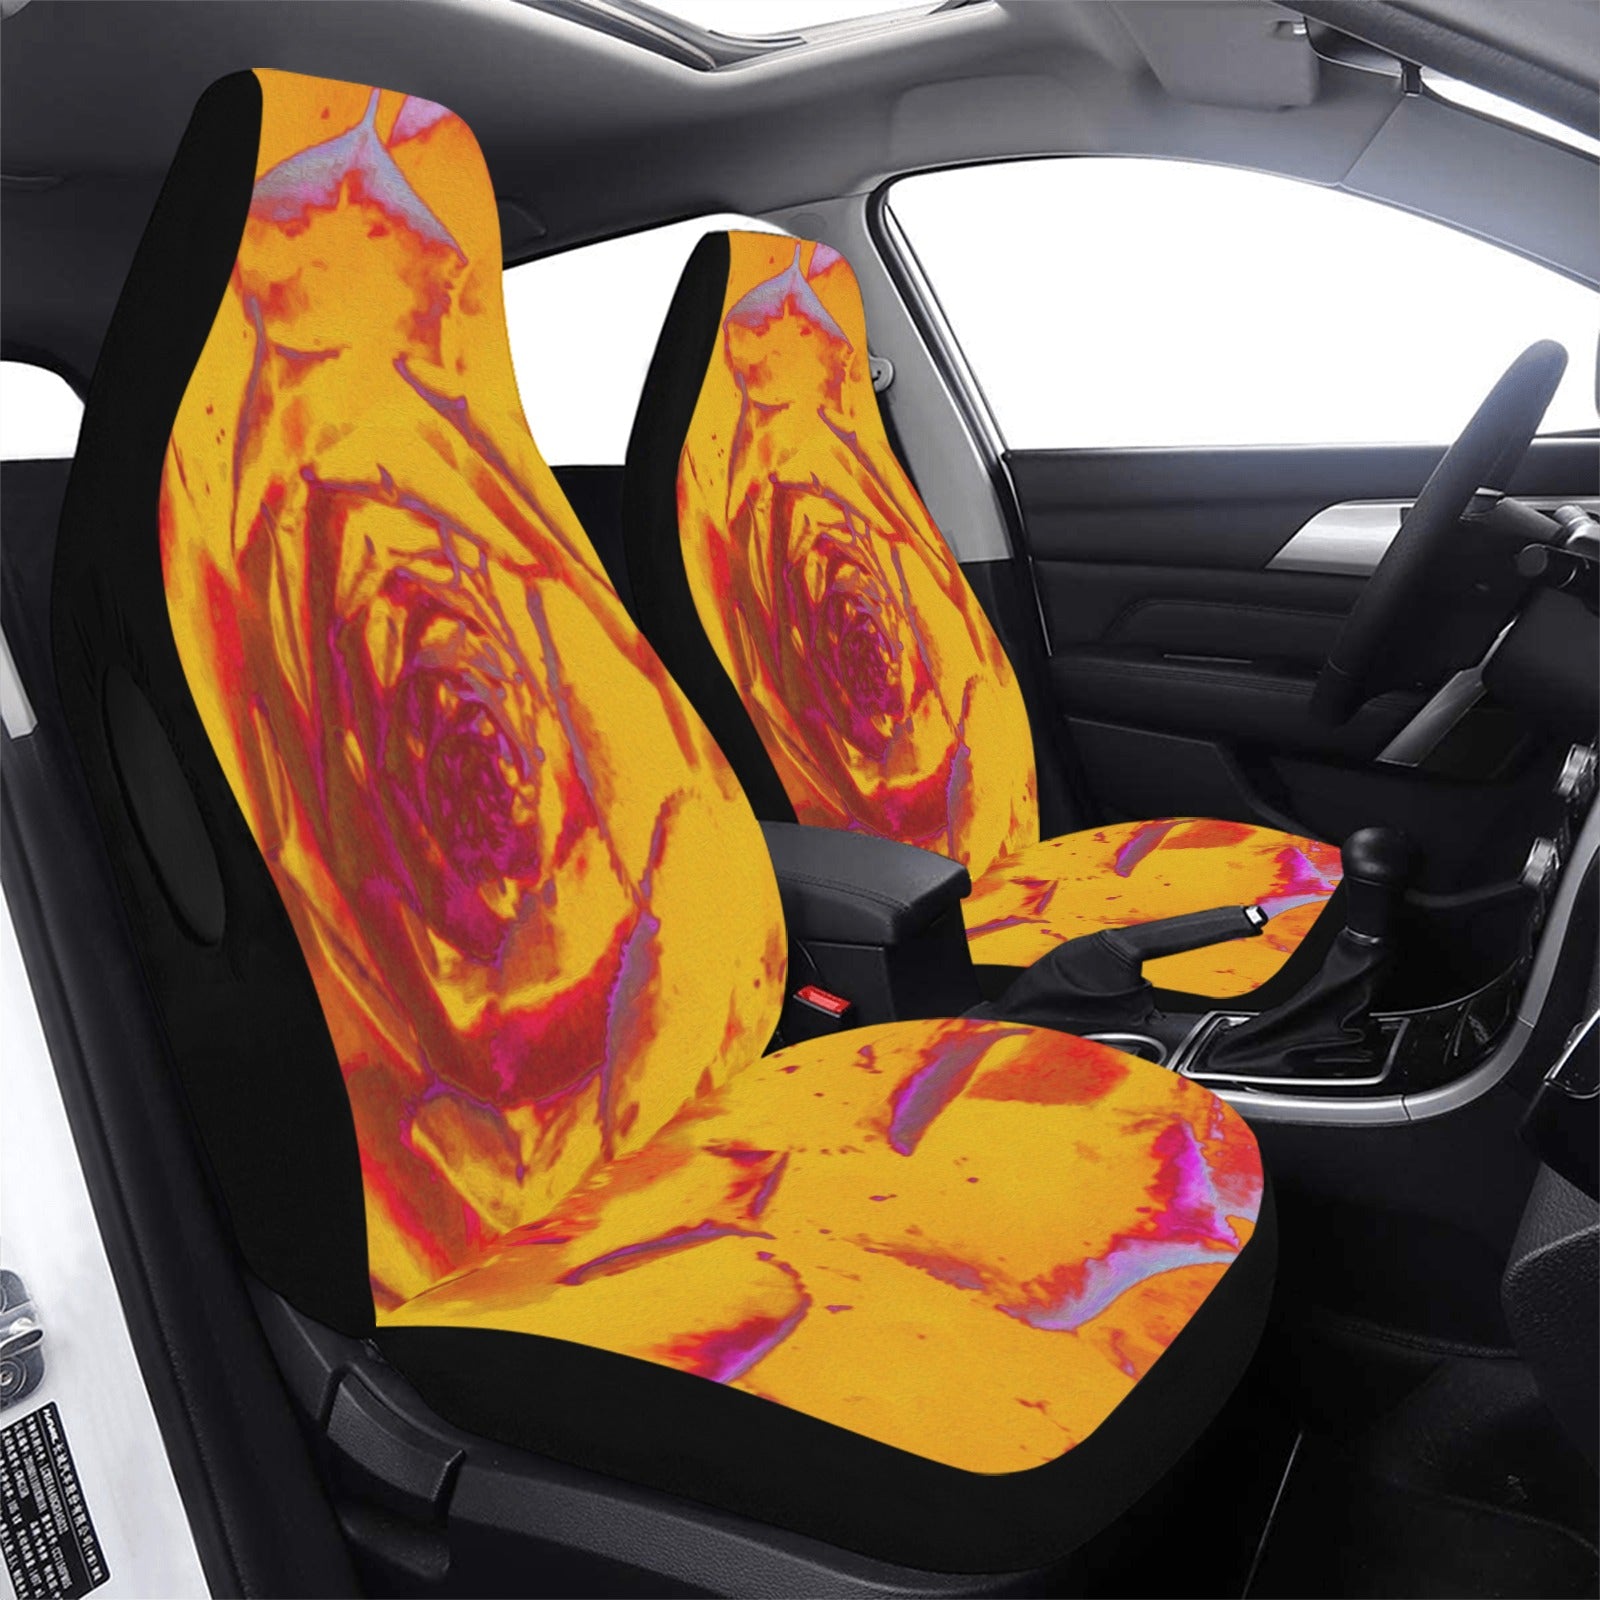 Car Seat Covers - Autumn Yellow, Orange and Red Sedum Rosette